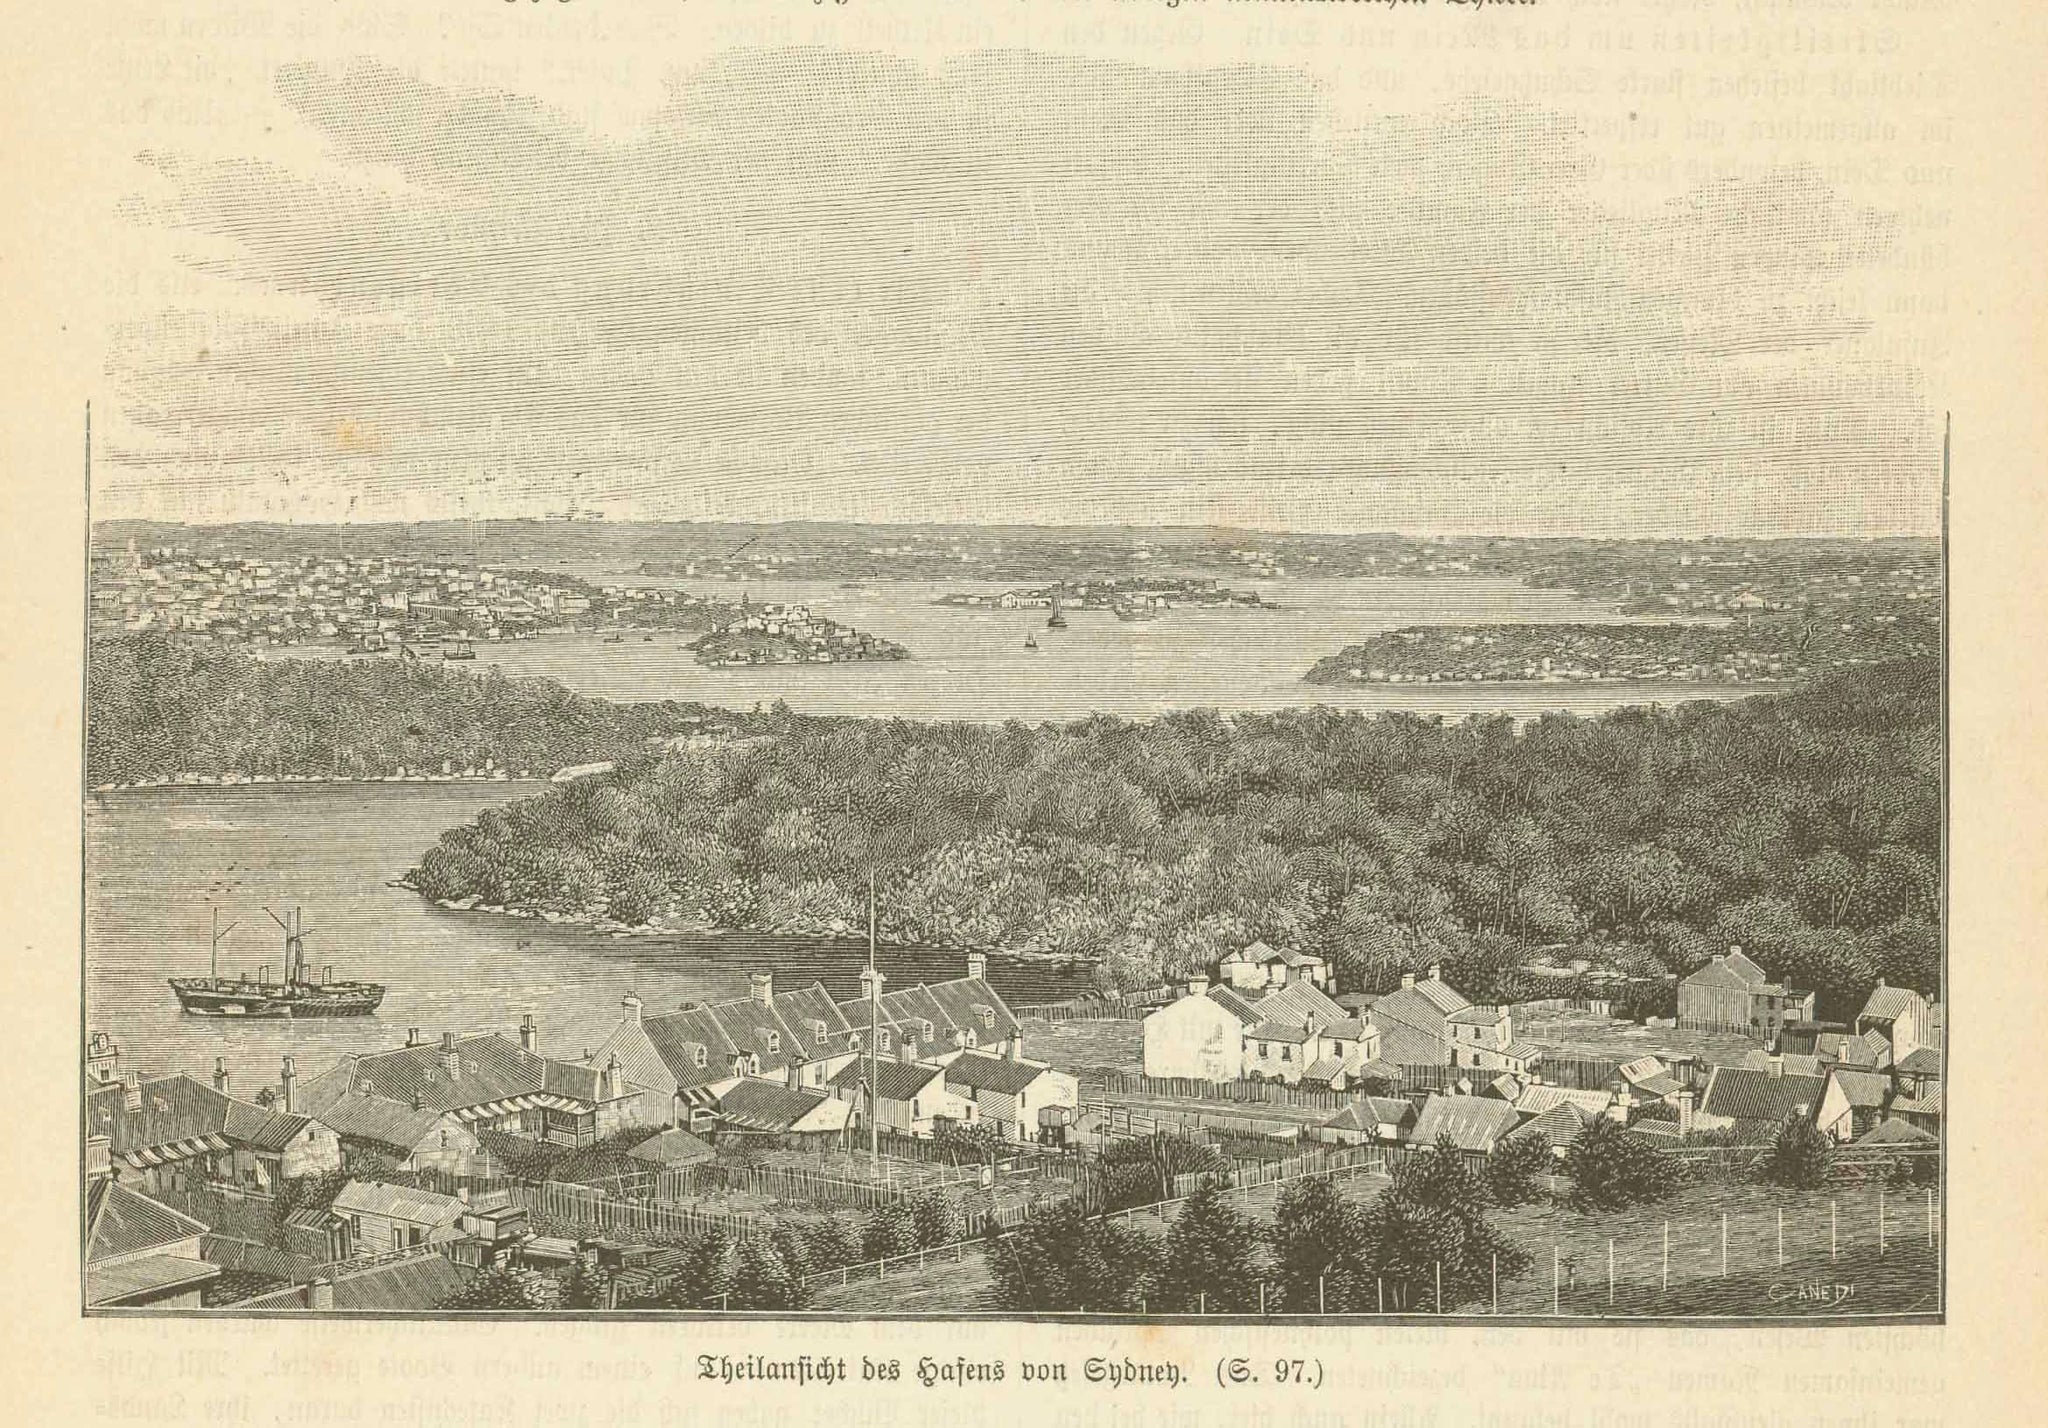 Australia  "Theilansichts von Hafens von Sydney" (partial view of Sydney Harbor)  Wood engraving published 1897.  Original antique print  